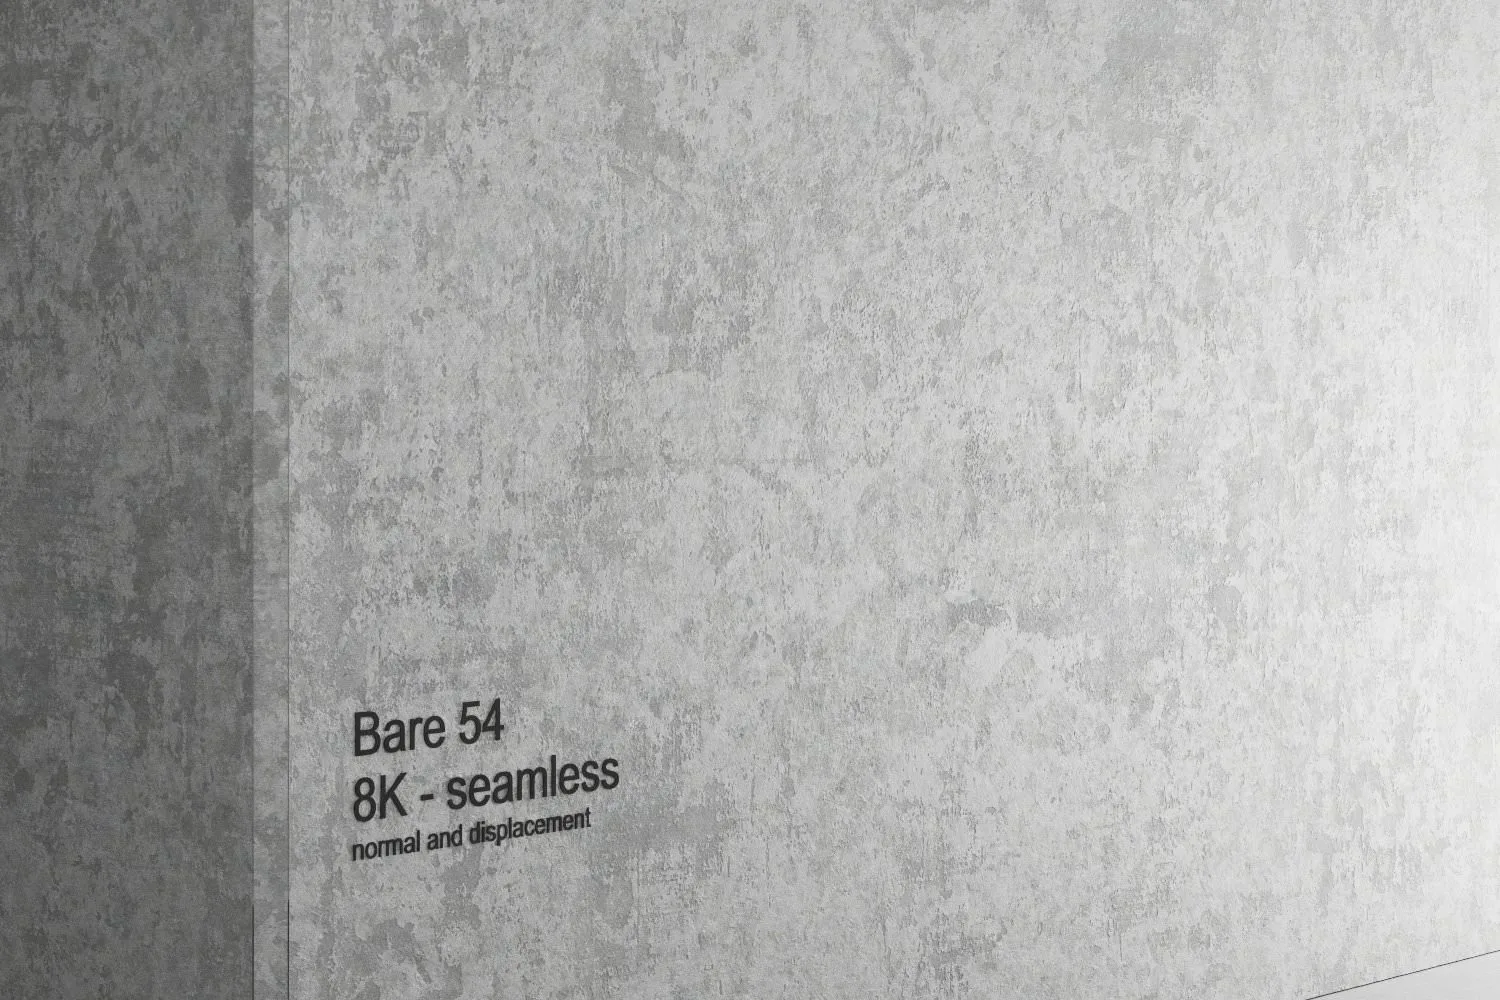 Concrete vol02 Bare 8K Seamless PBR Materials